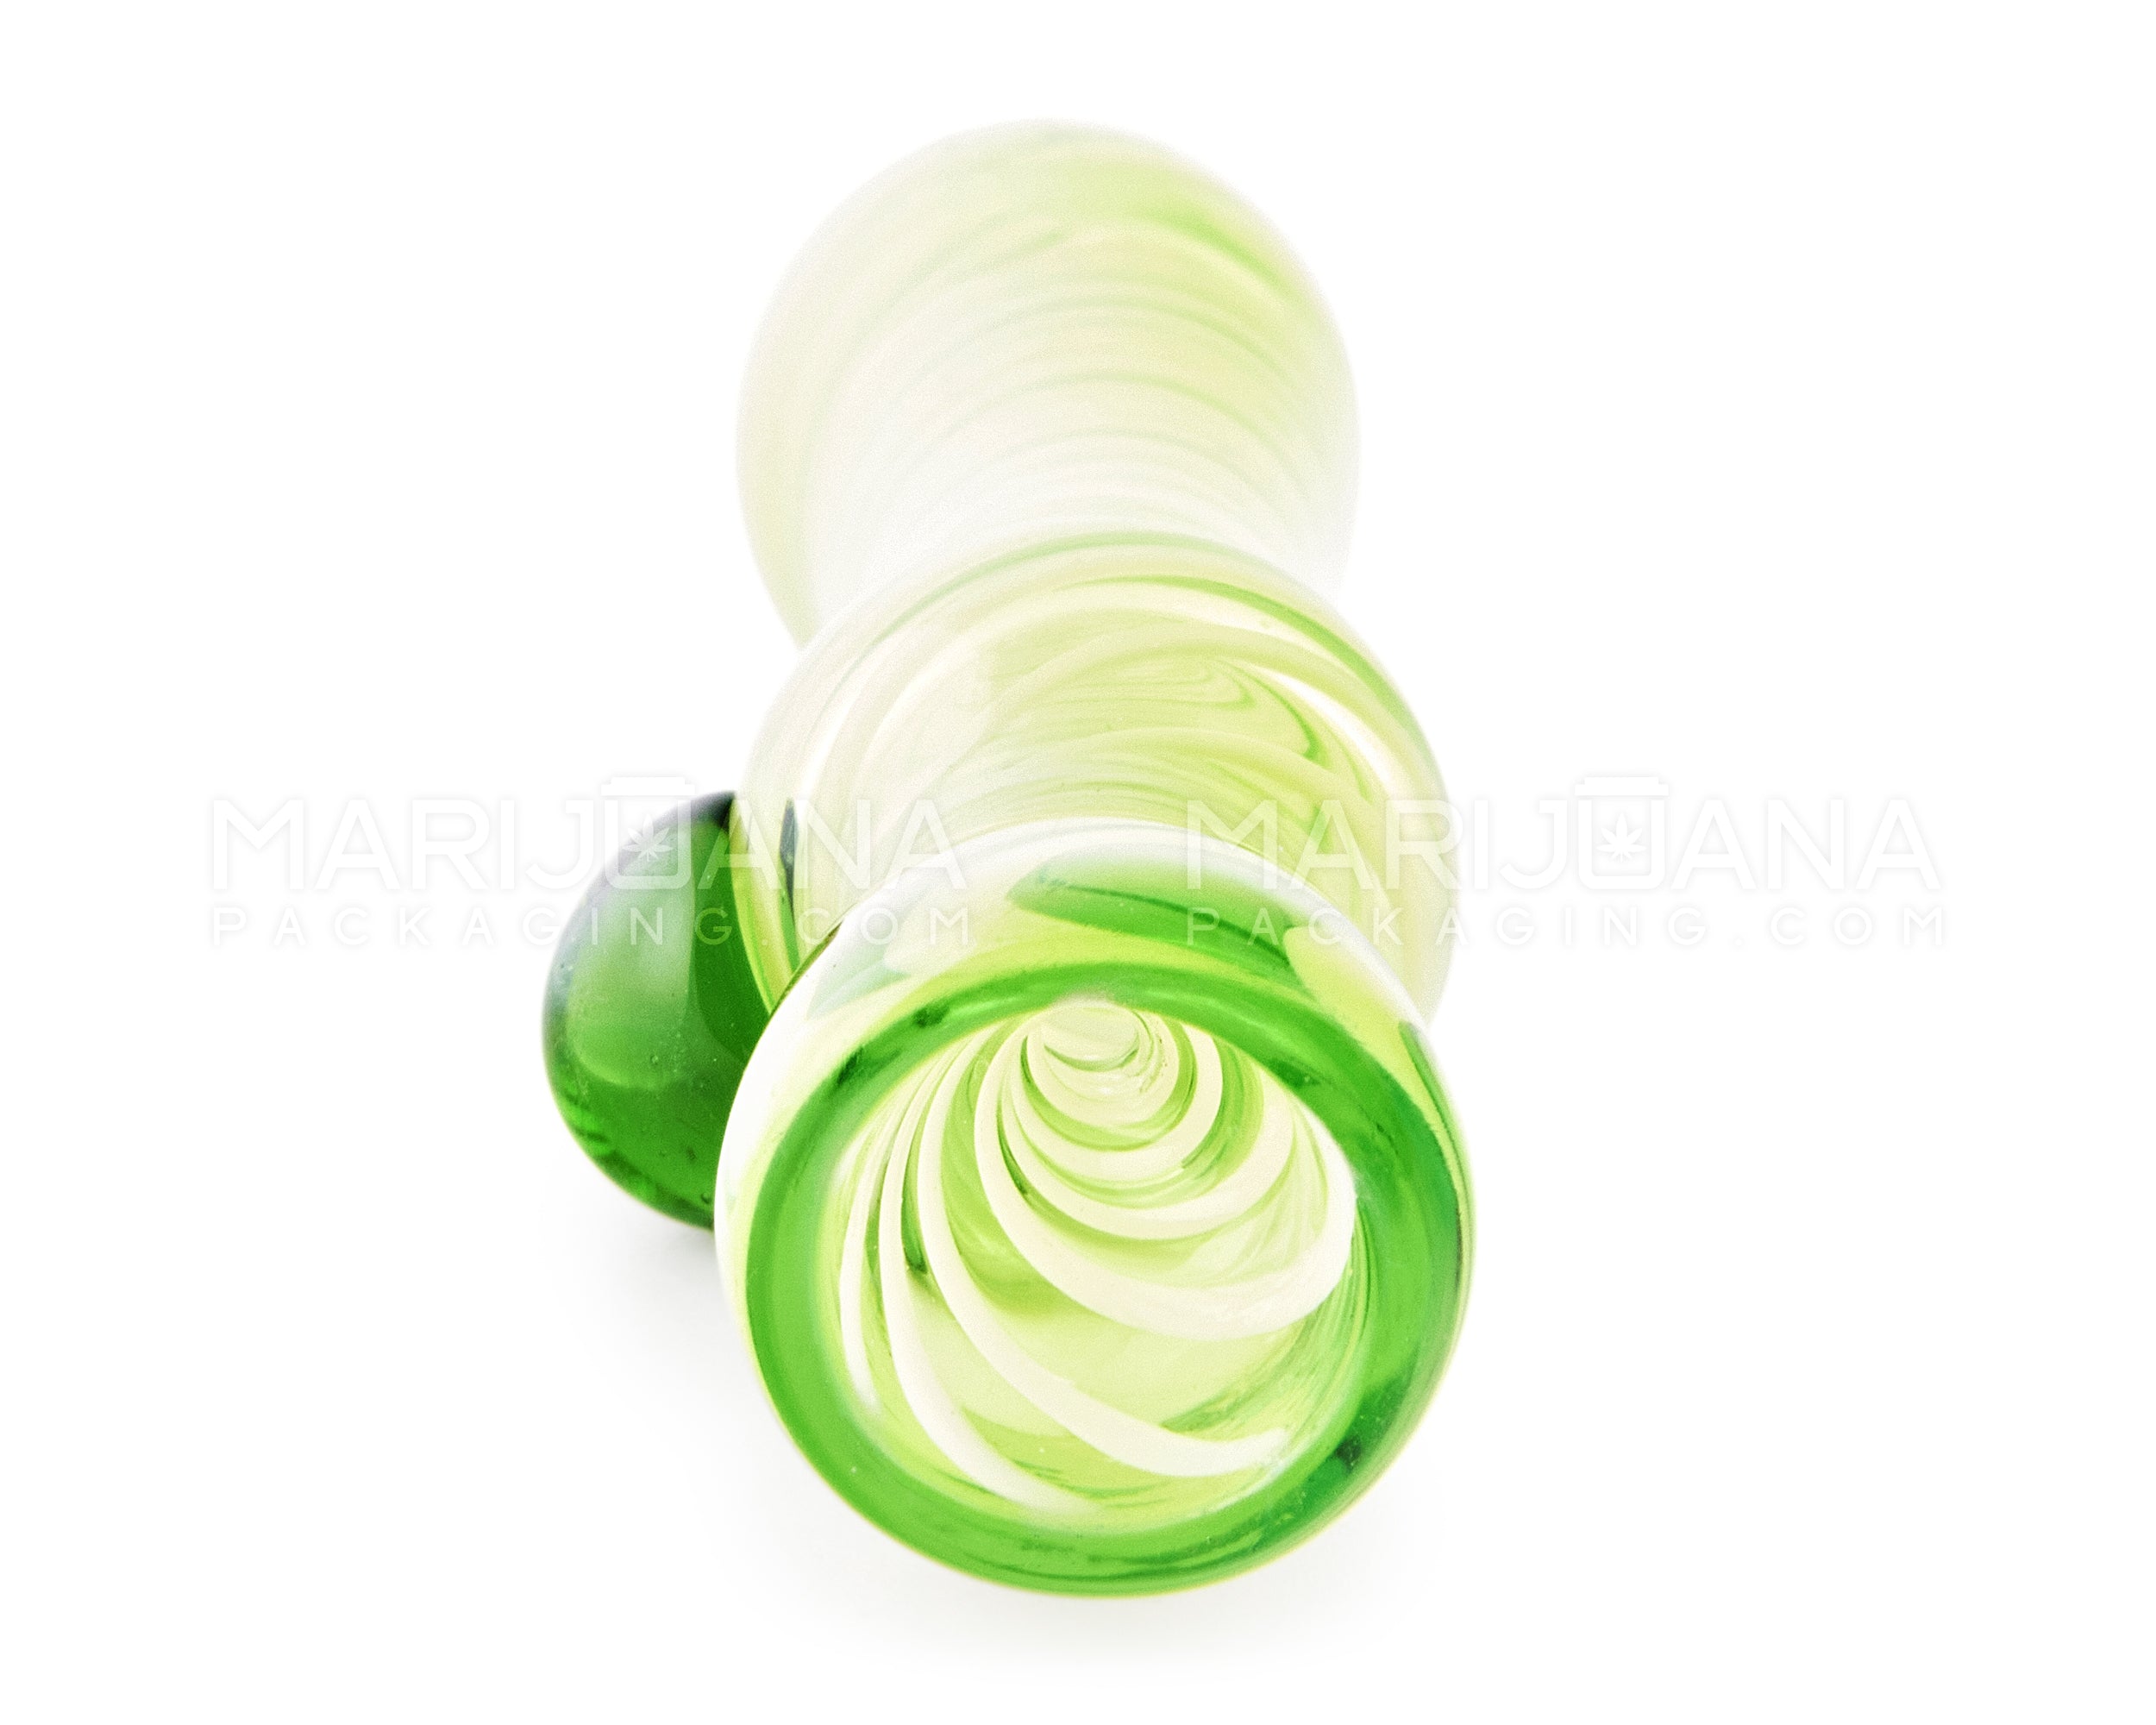 Swirl Chillum Hand Pipe w/ Single Knocker | 3.5in Long - Glass - Green